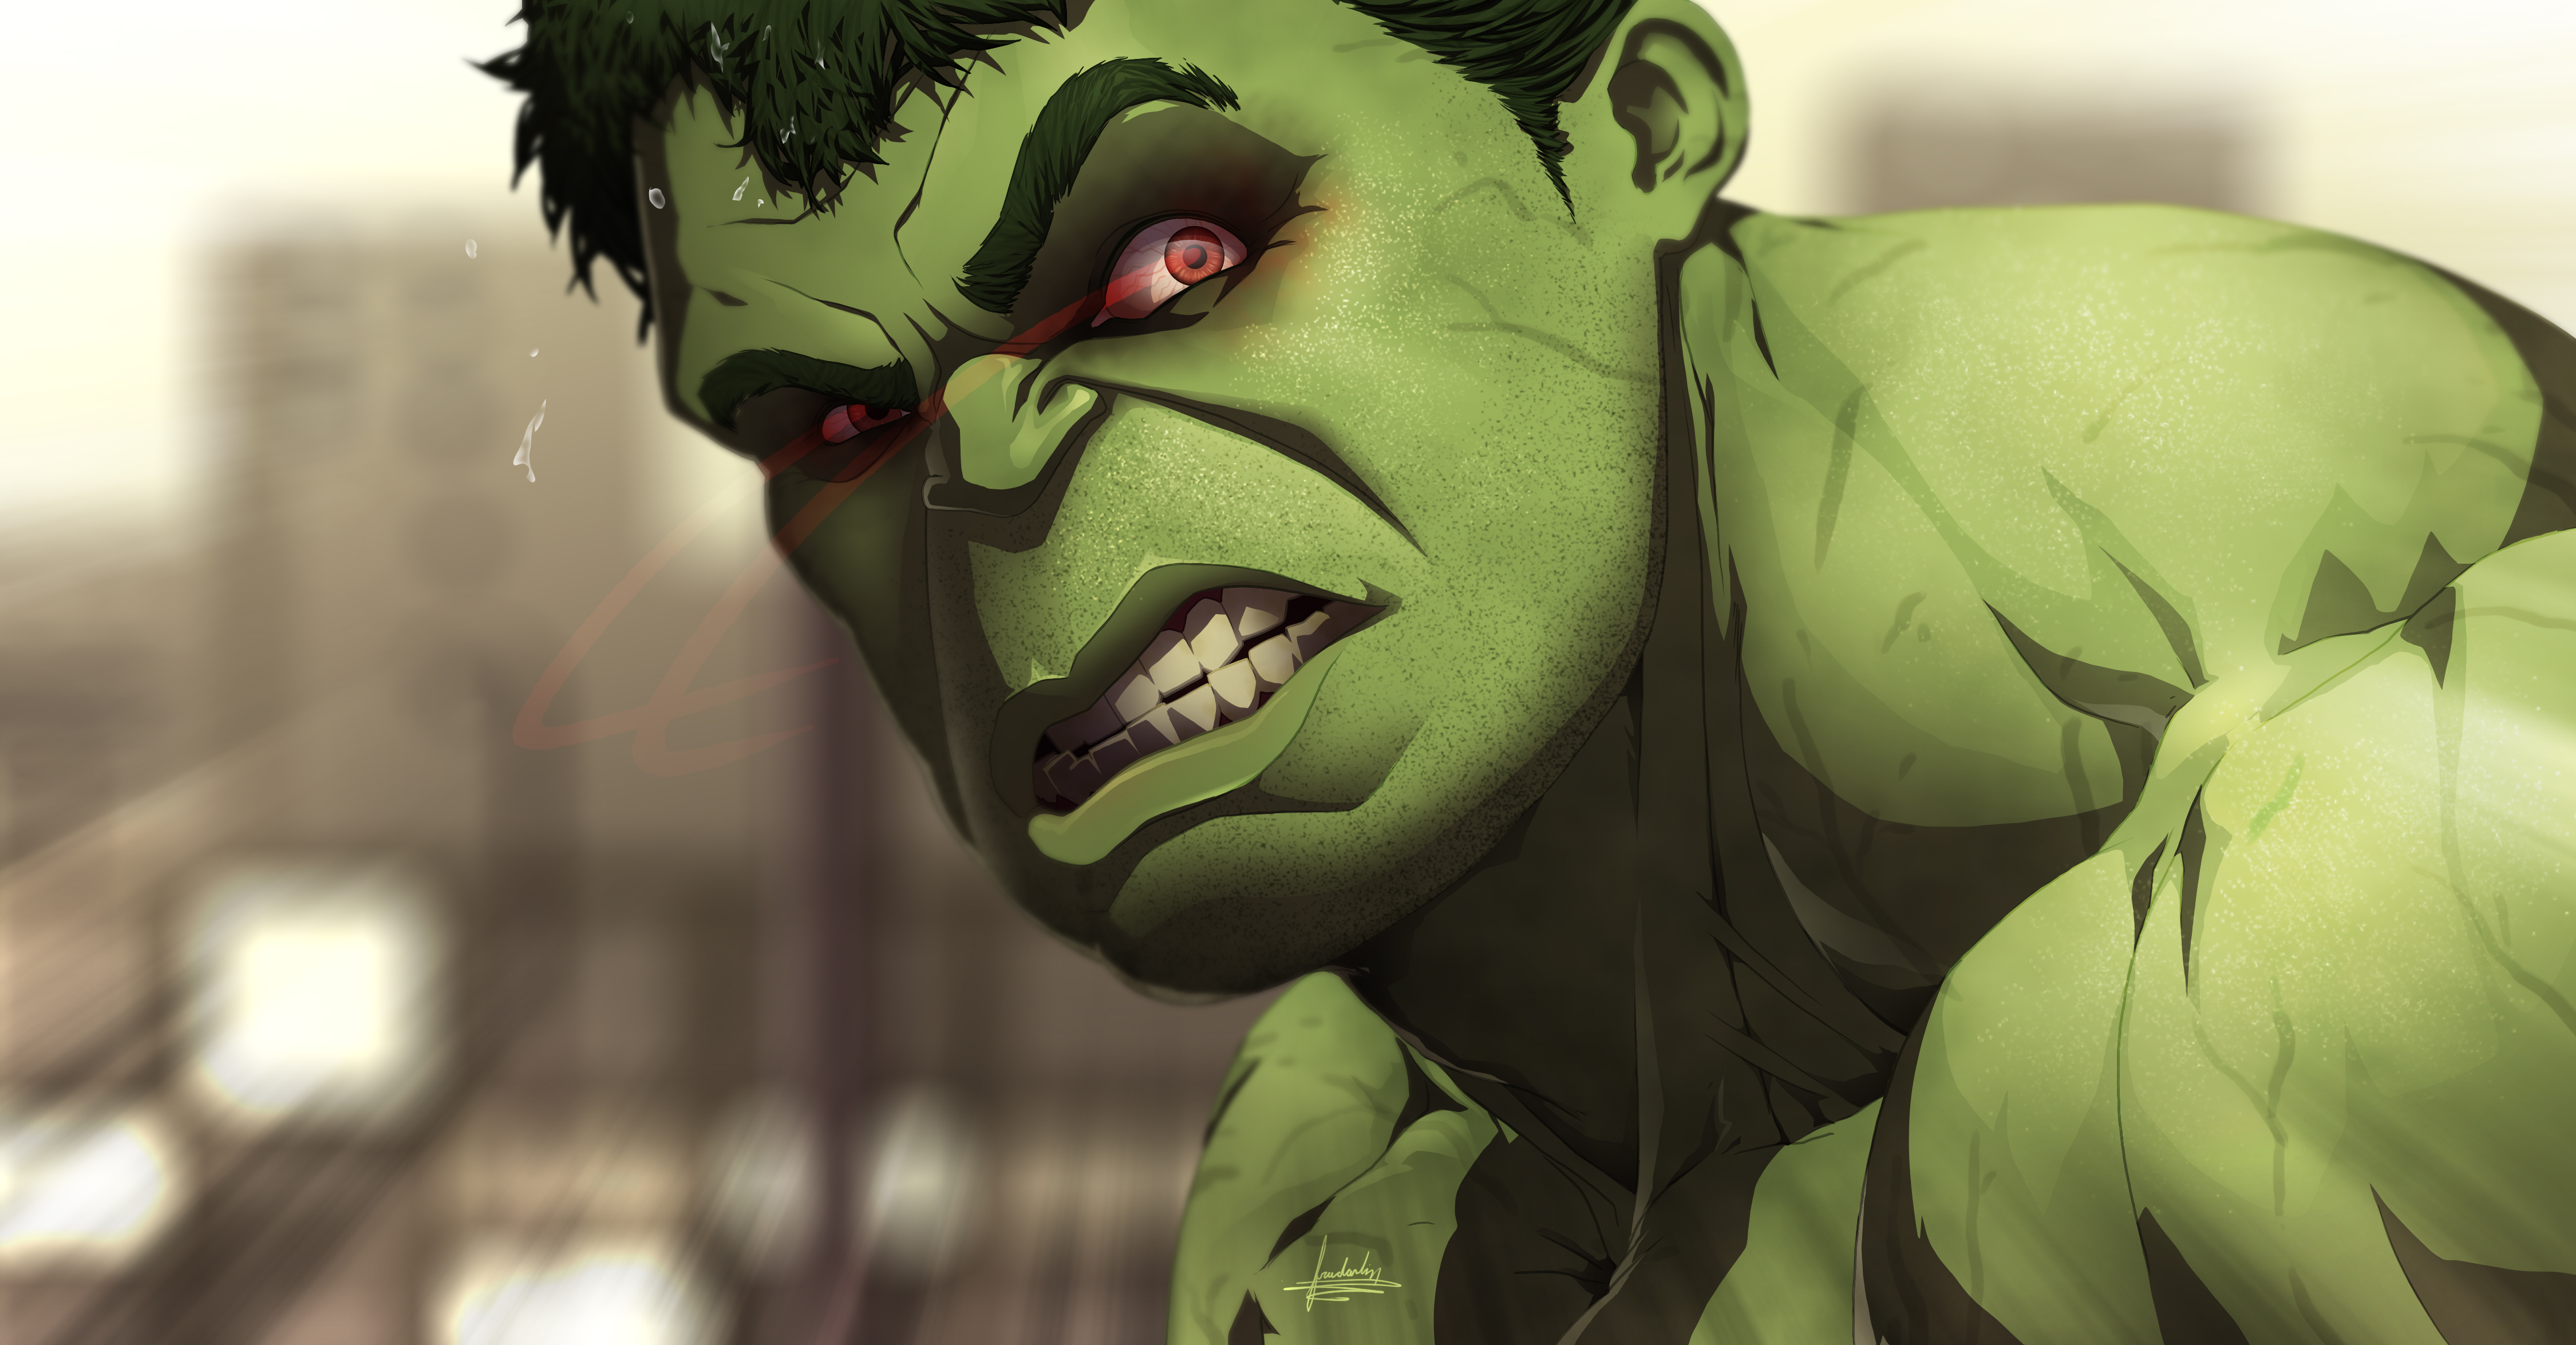 General 4500x2350 cartoon Hulk face digital art closeup signature